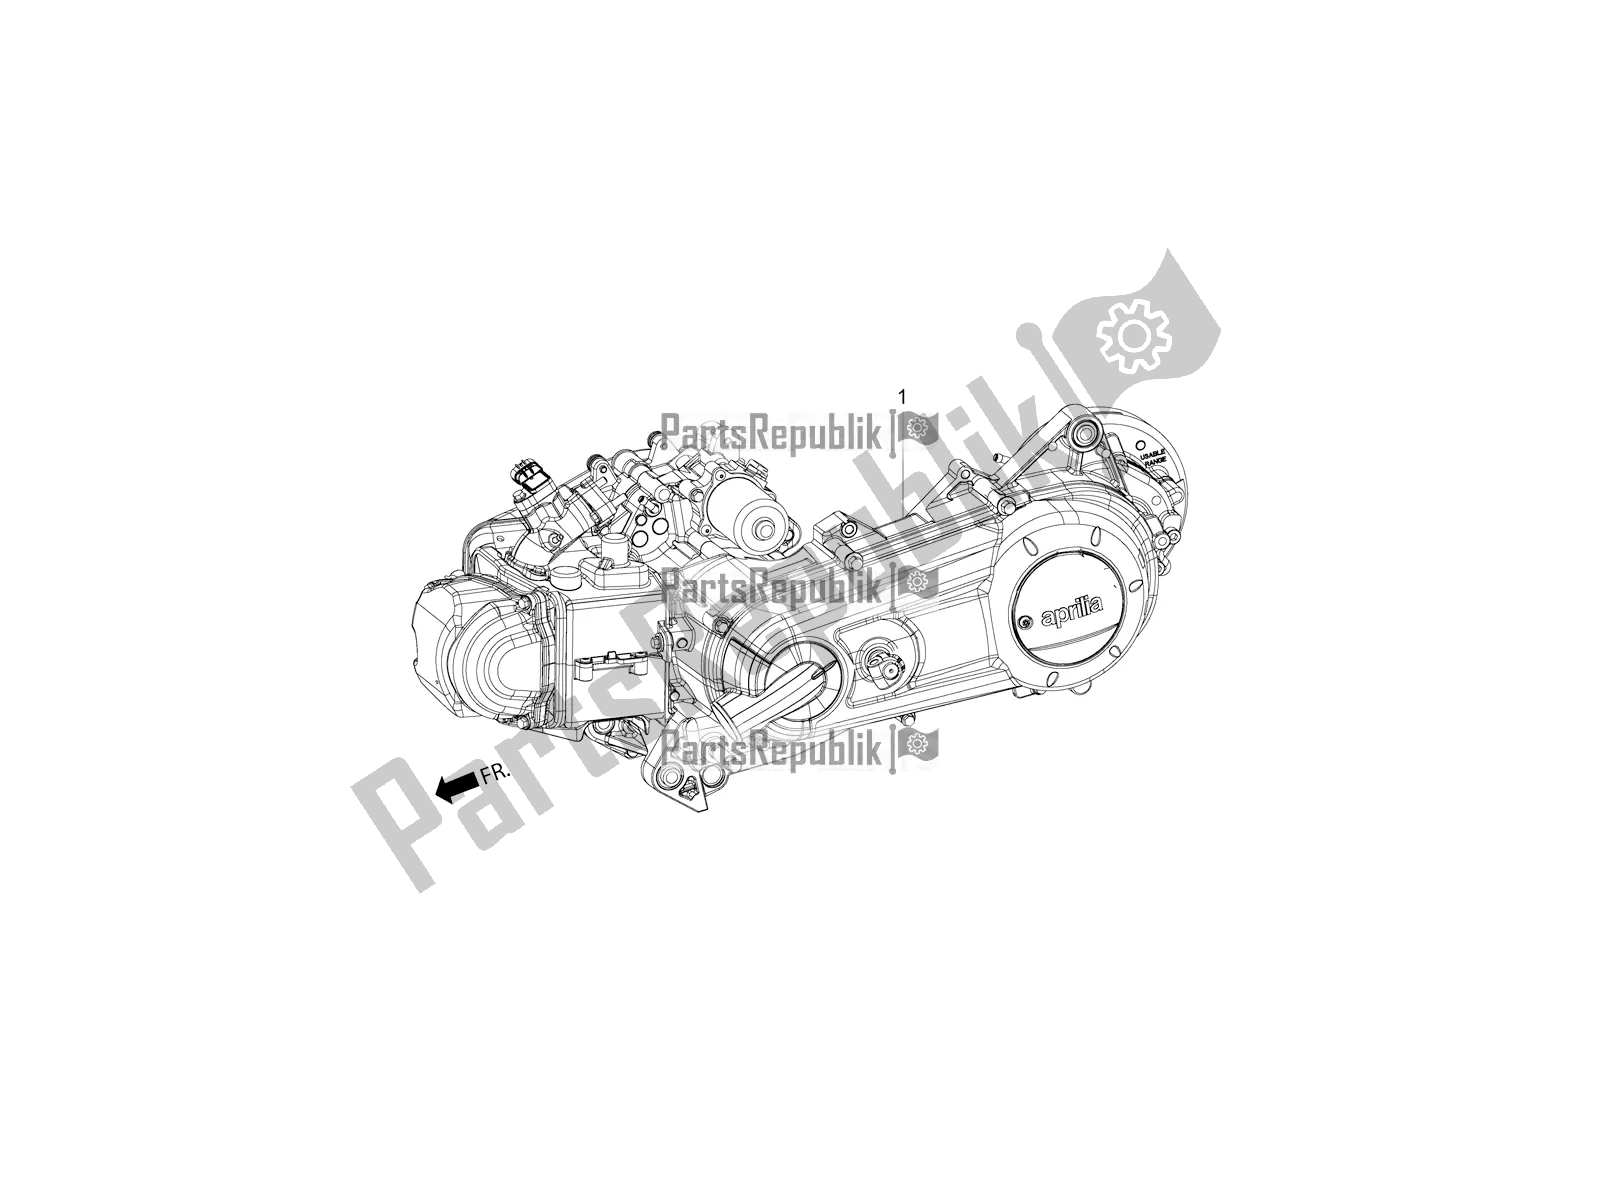 Toutes les pièces pour le Complete Engine du Aprilia SR 150 HE Carb. 2018